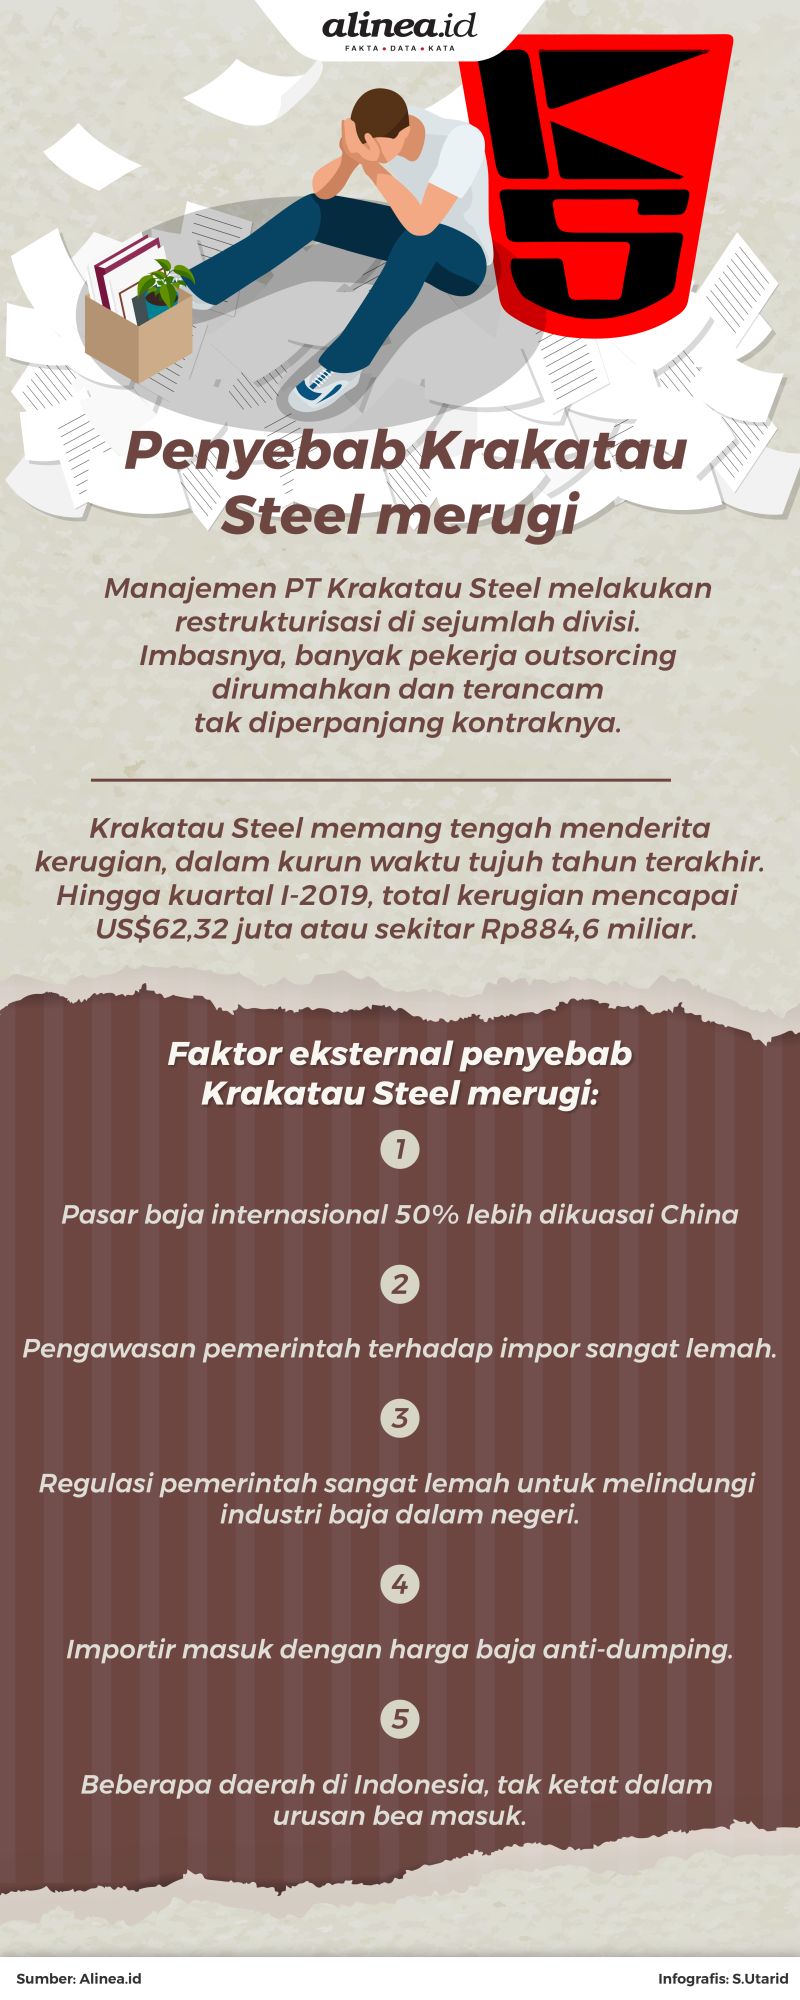 Krakatau Steel mengaku merugi dalam tujuh tahun berturut-turut.